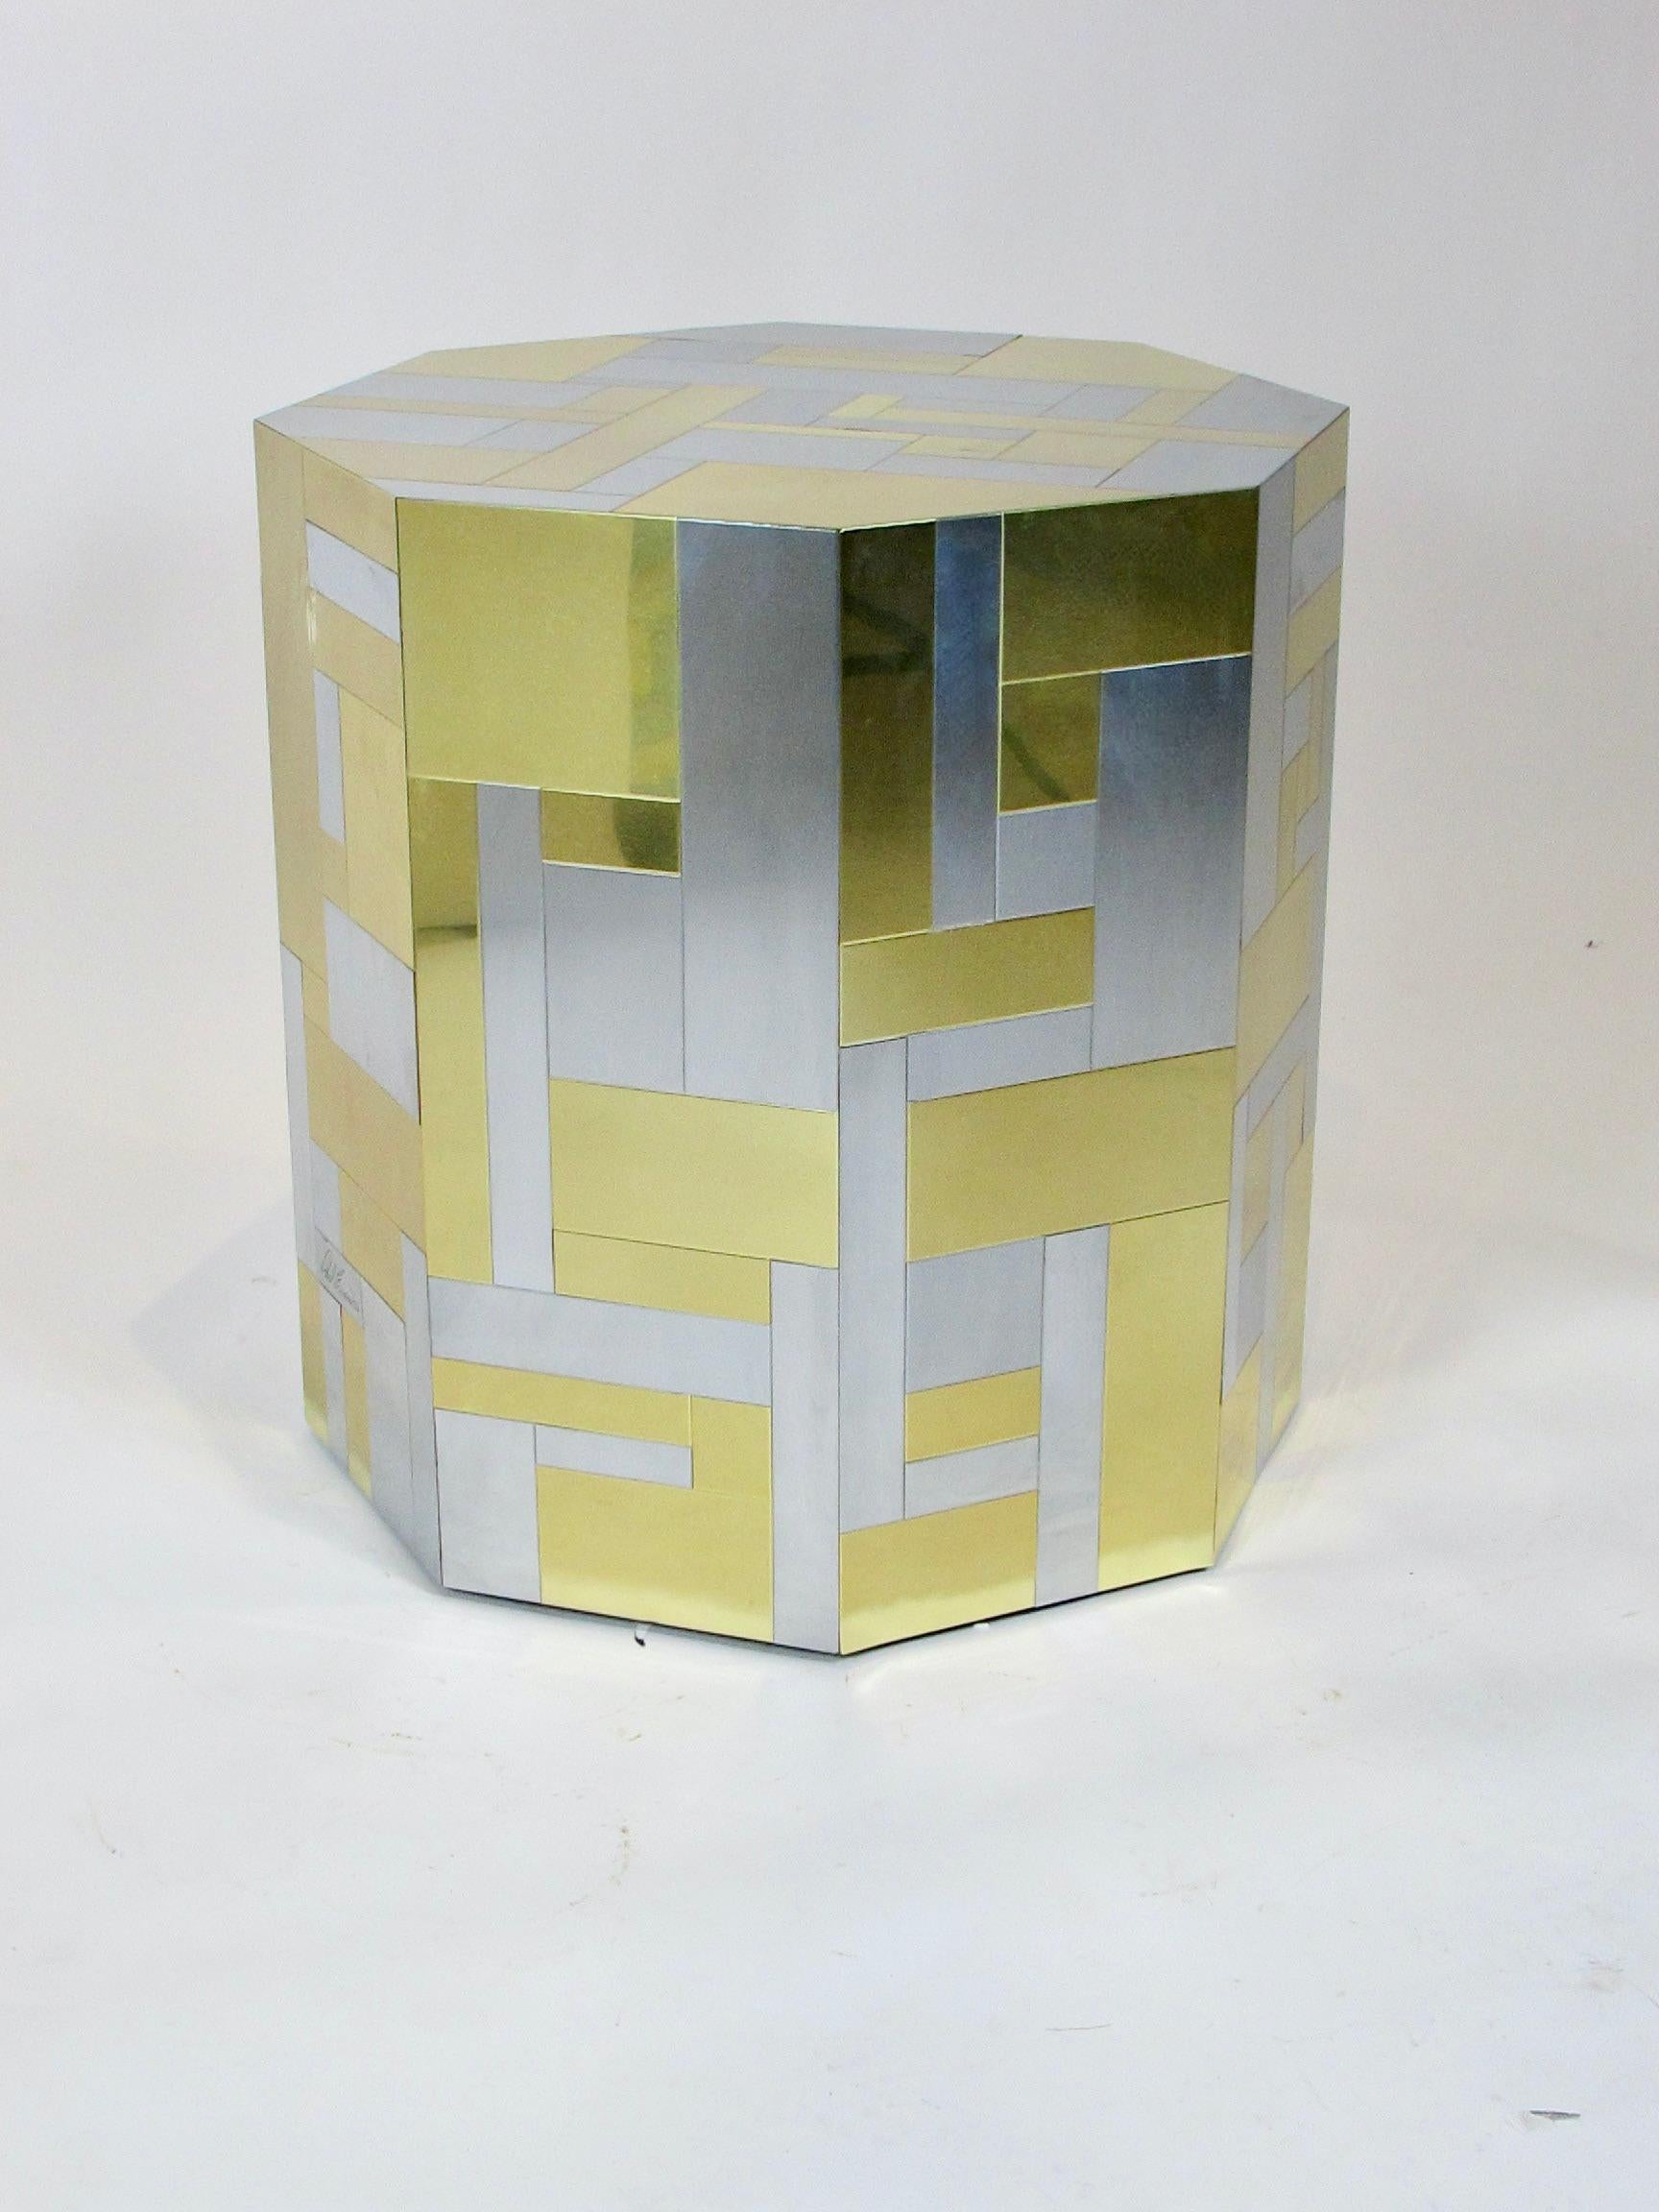 Paul Evans hat einen sechseckigen Tisch entworfen. Verschiedene geometrische Formen aus poliertem Messing und gebürstetem Edelstahl sind auf einer sechseckigen Säule angebracht. Ein funkelndes Juwel, egal wie man es verwendet. Mit Glasplatte ein